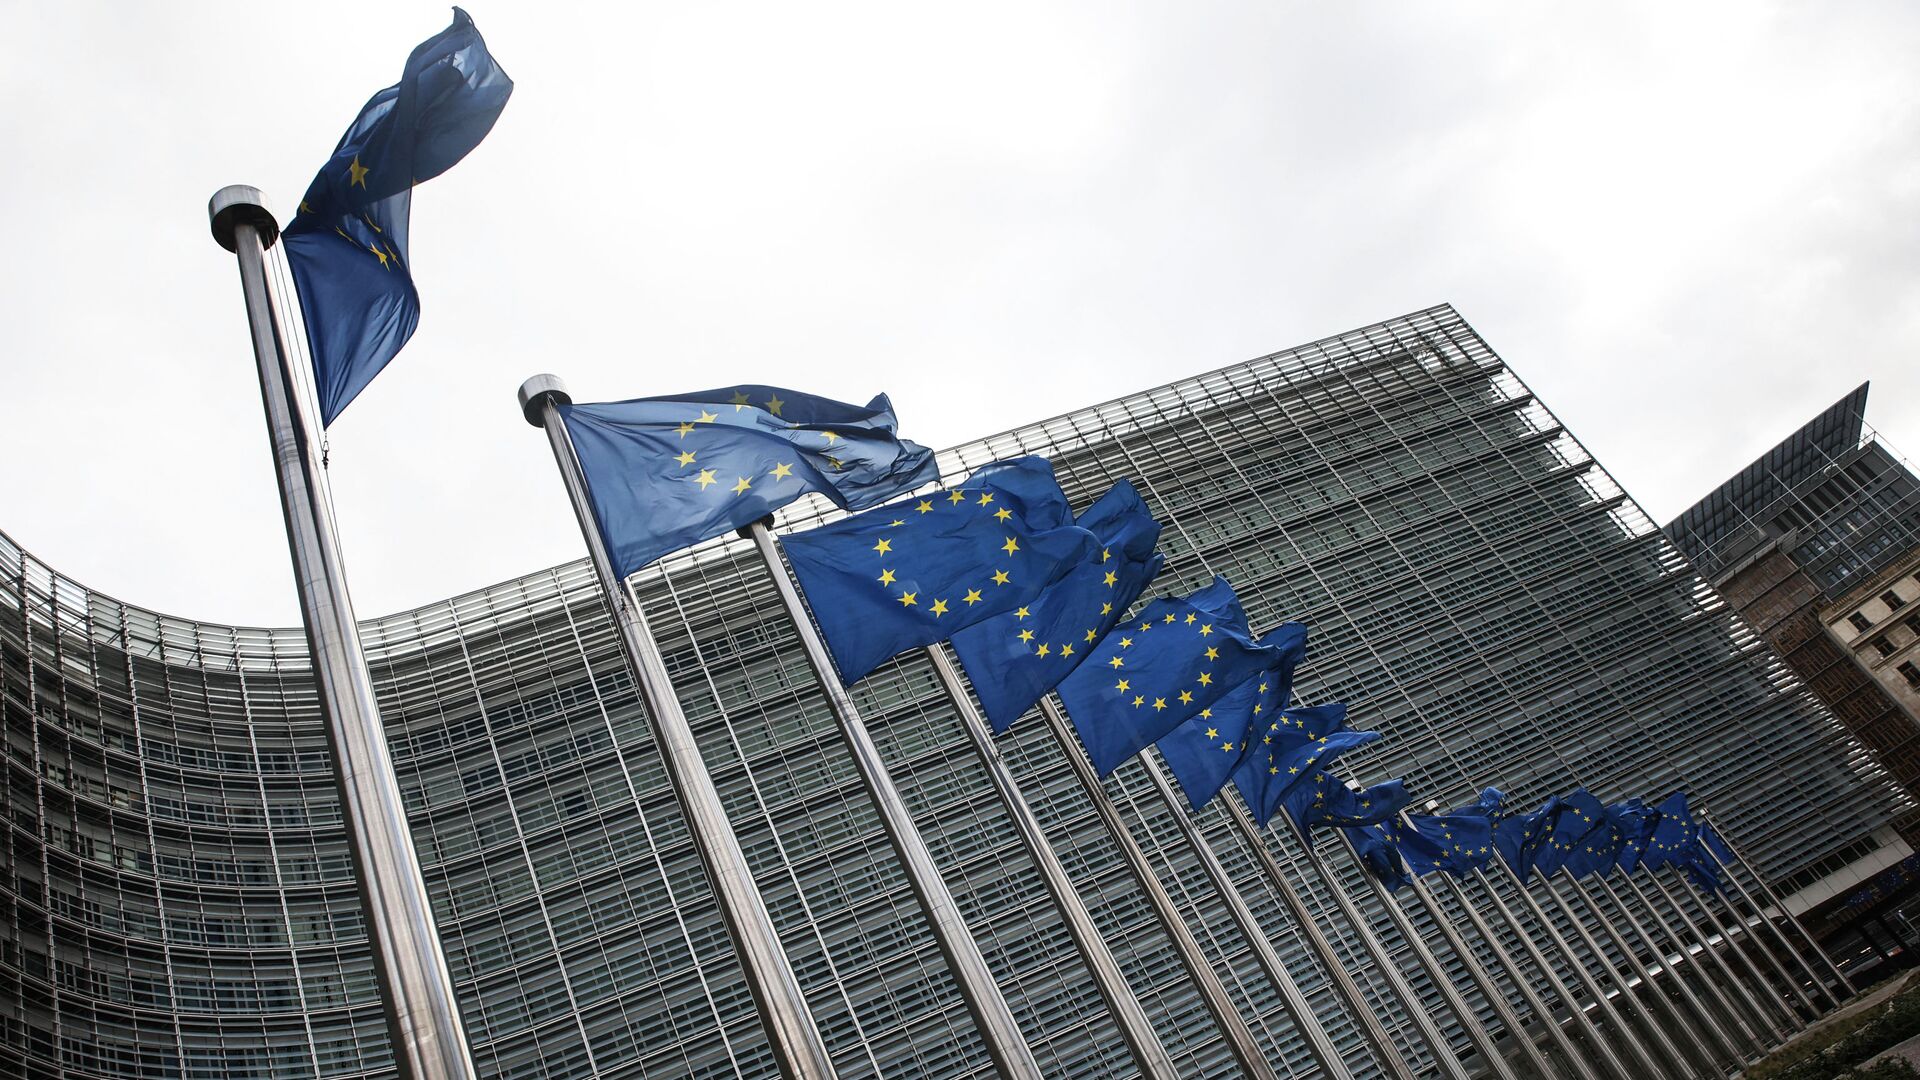 Флаги Европейского союза у штаб-квартиры Европейской комиссии в Брюсселе - Sputnik Lietuva, 1920, 30.04.2021